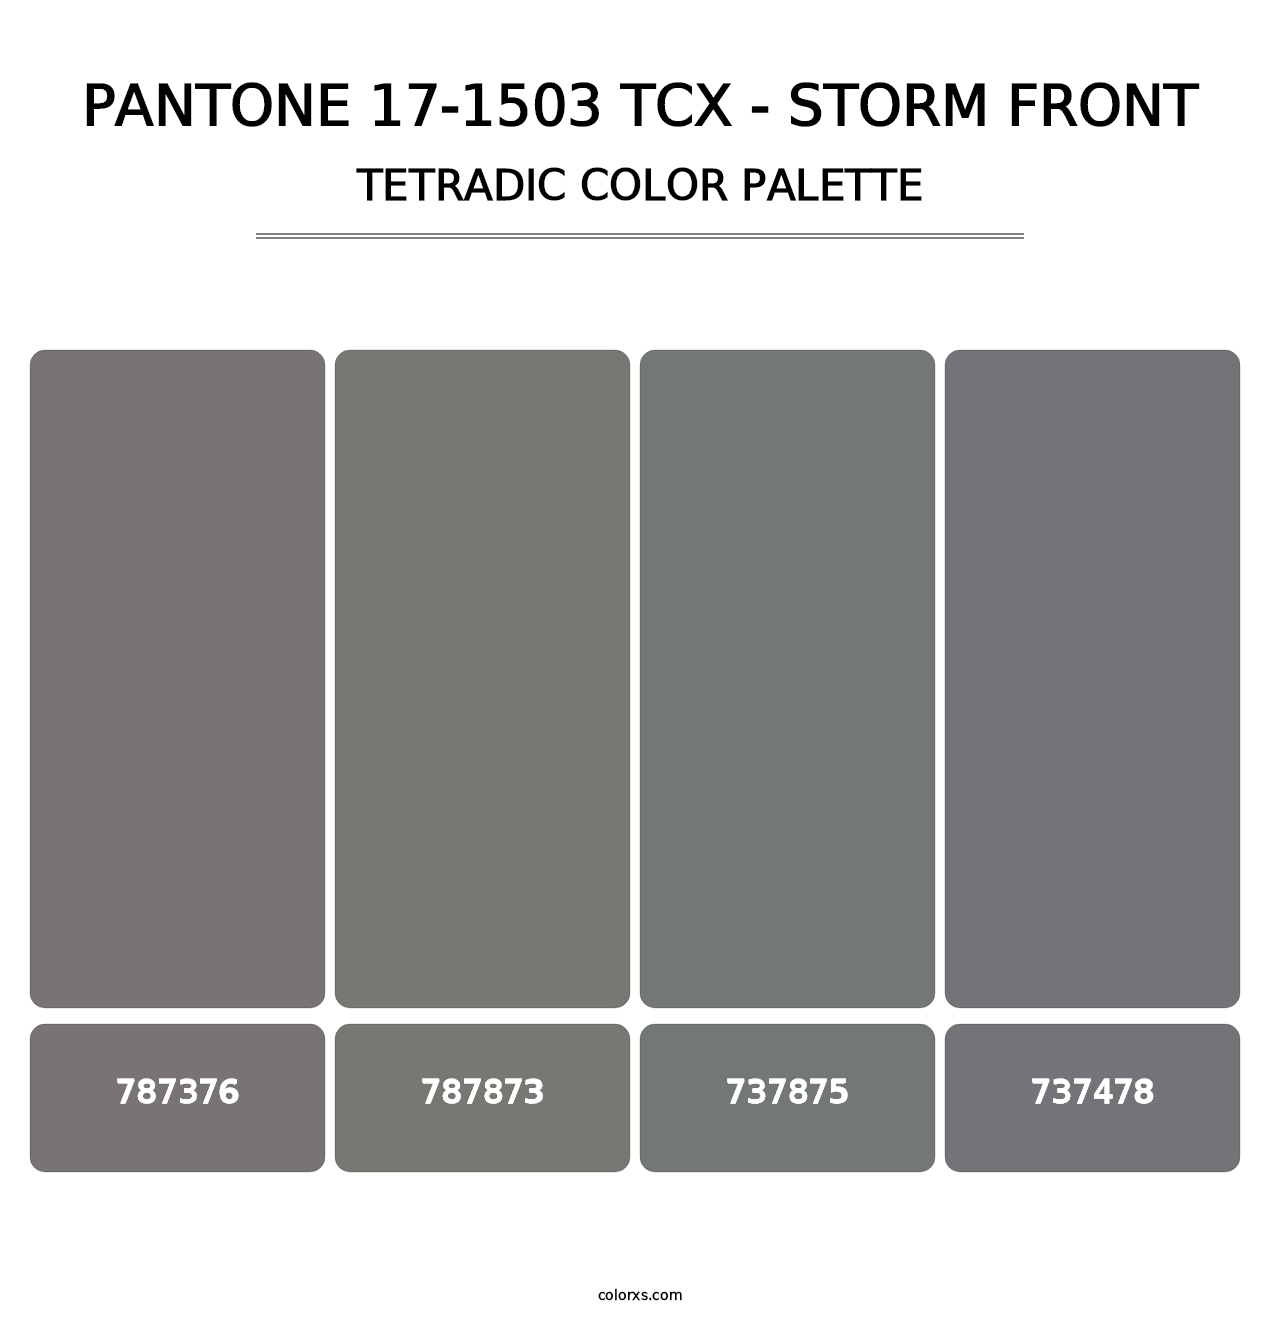 PANTONE 17-1503 TCX - Storm Front - Tetradic Color Palette